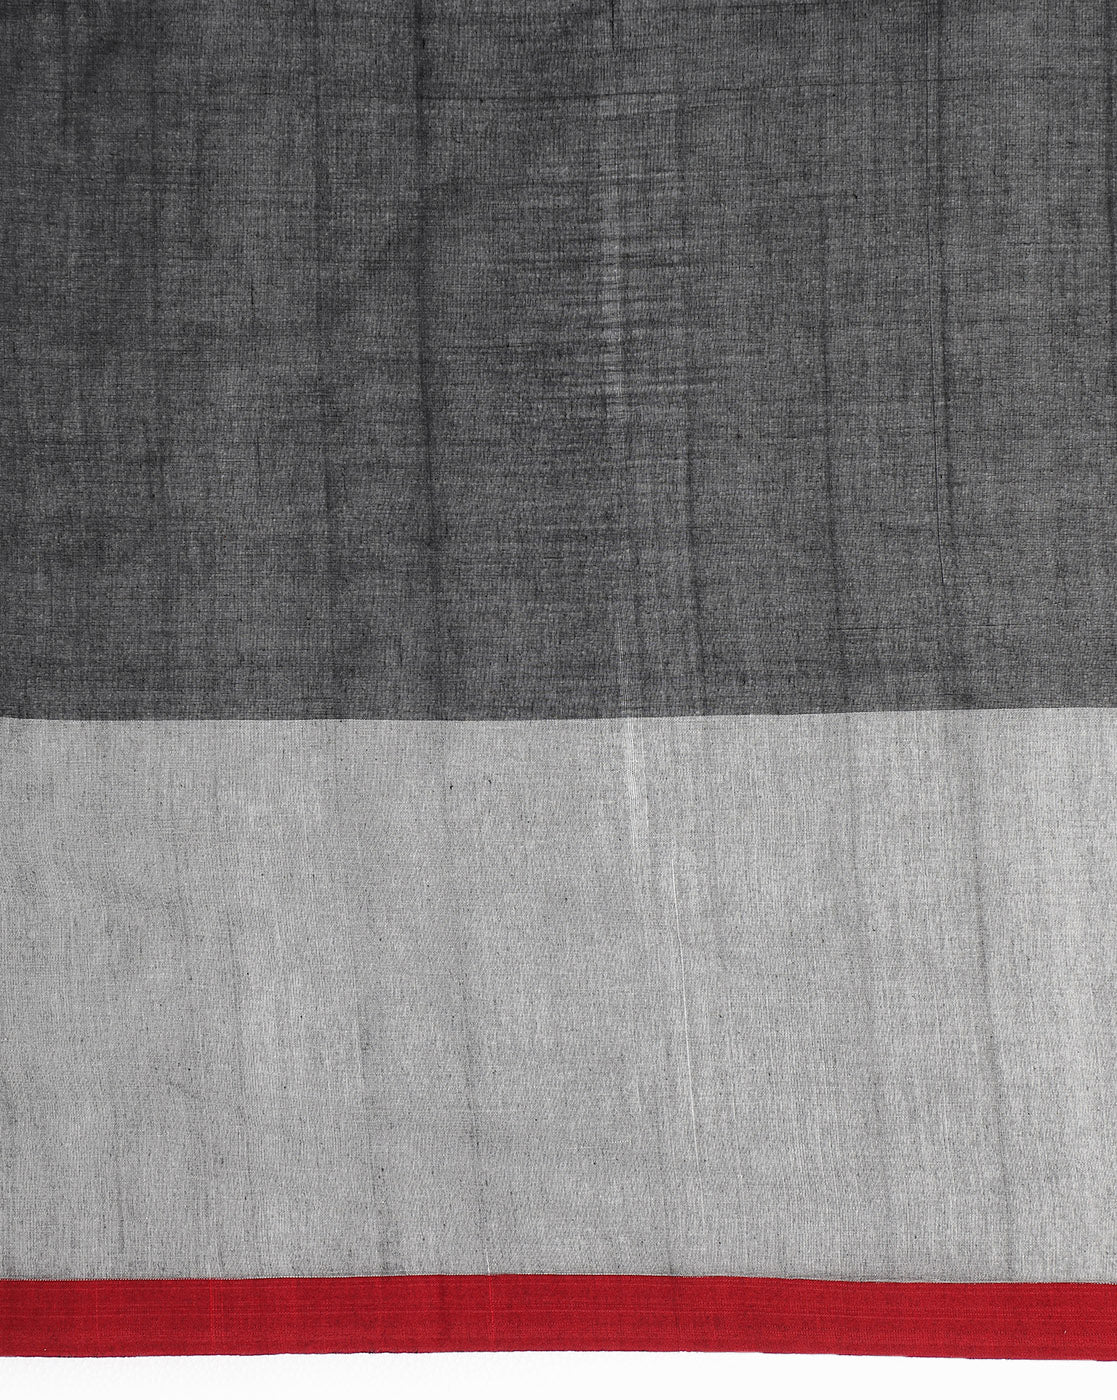 Grey Black Colour block Cotton Saree with pompoms